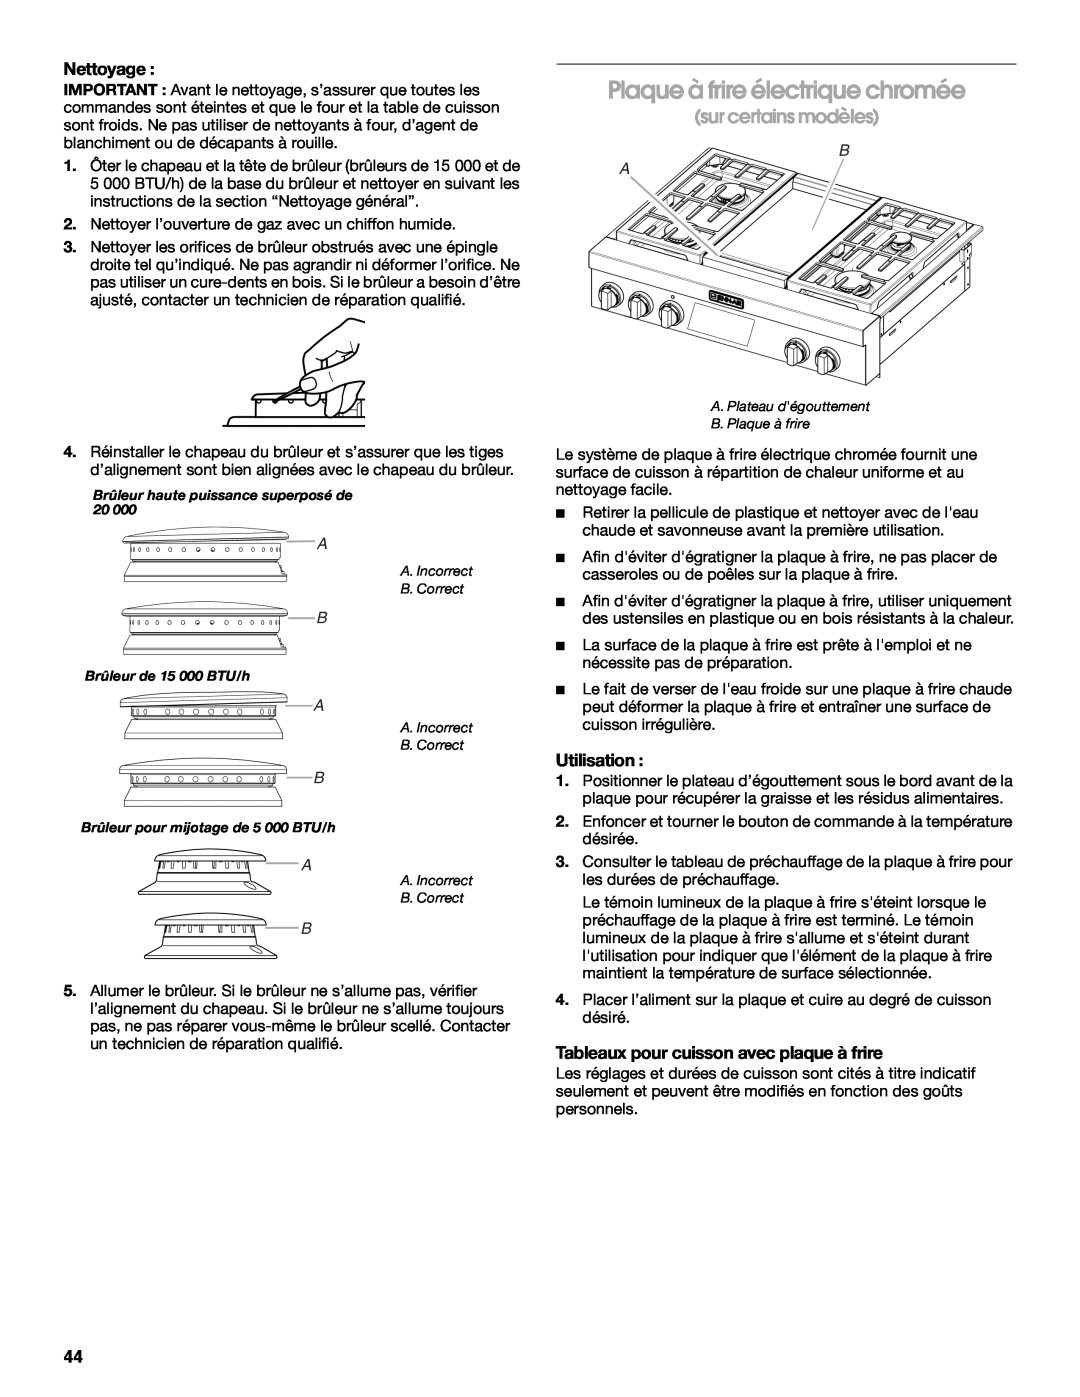 Jenn-Air JDRP430 manual Plaque à frire électrique chromée, sur certains modèles, Nettoyage, Utilisation 